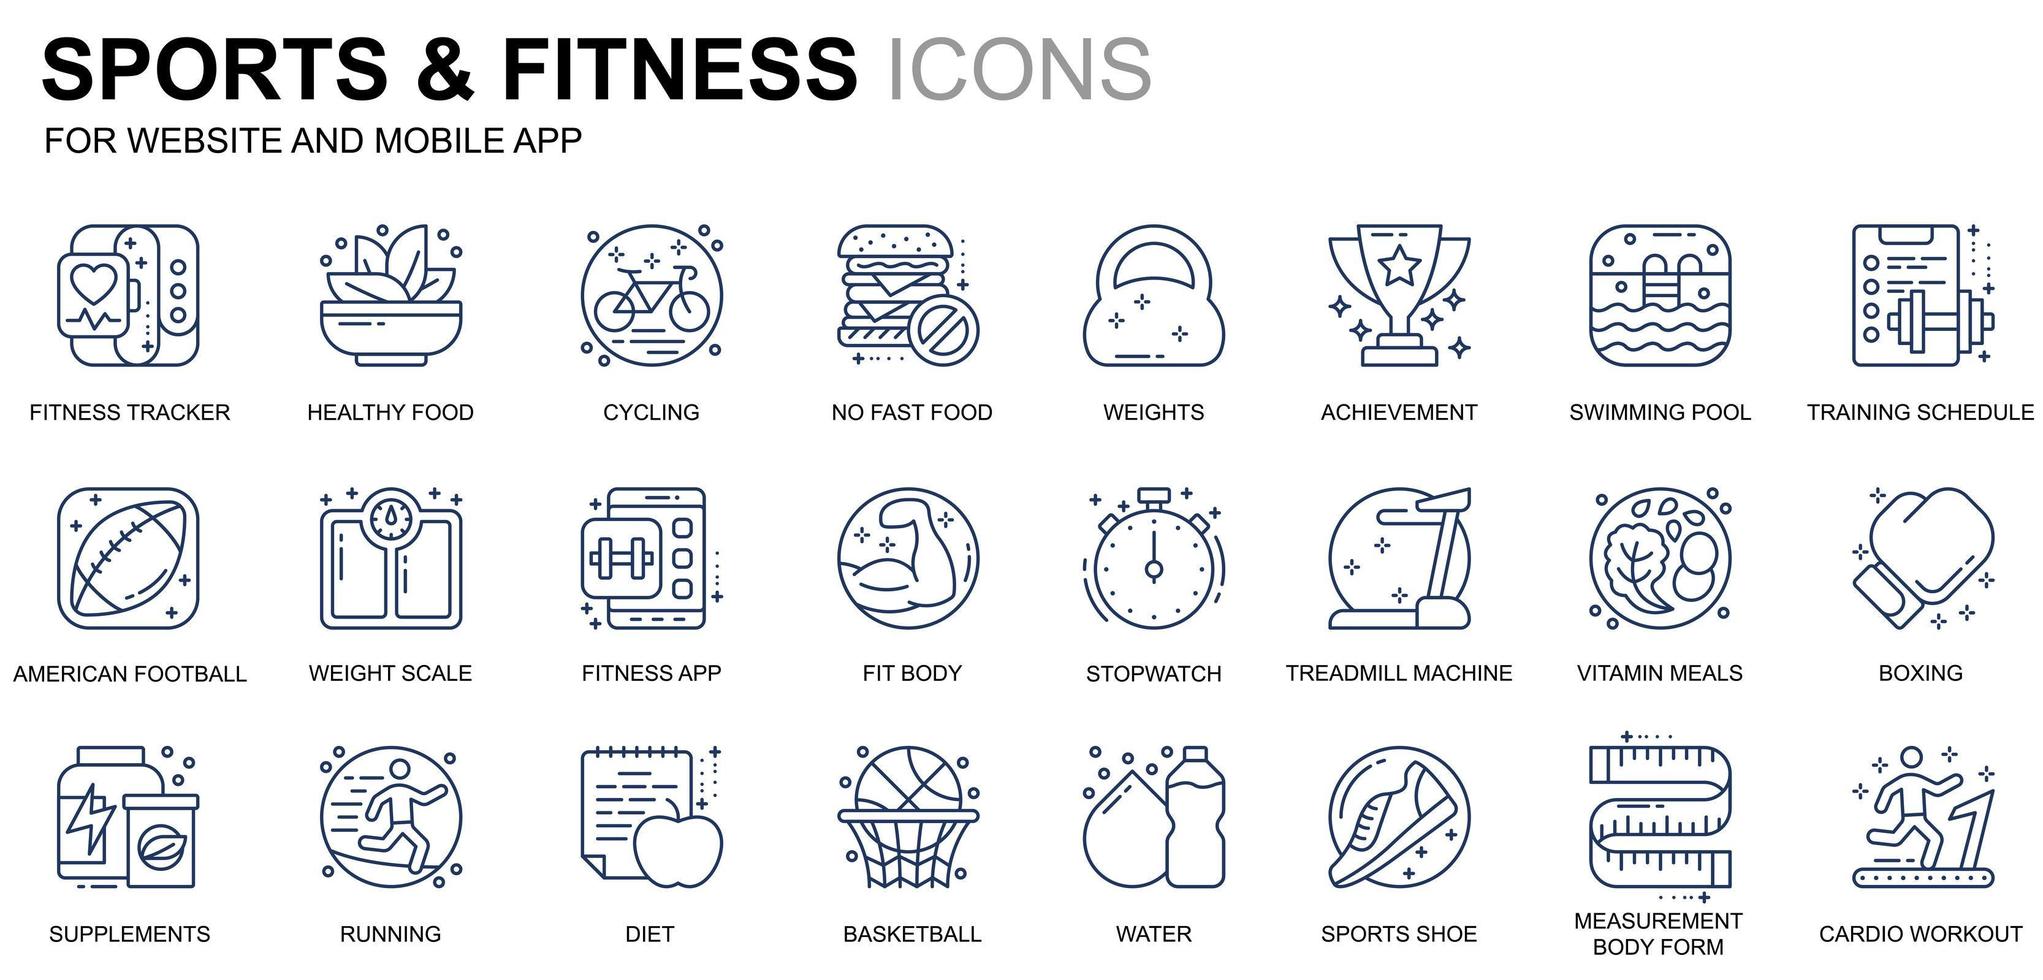 enkla inställningar för sport- och fitnesslinjeikoner för webbplatser och mobilappar. innehåller sådana ikoner som vältränad kropp, simning, fitnessapp, kosttillskott. konceptuell färg linje ikon. vektor piktogram pack.